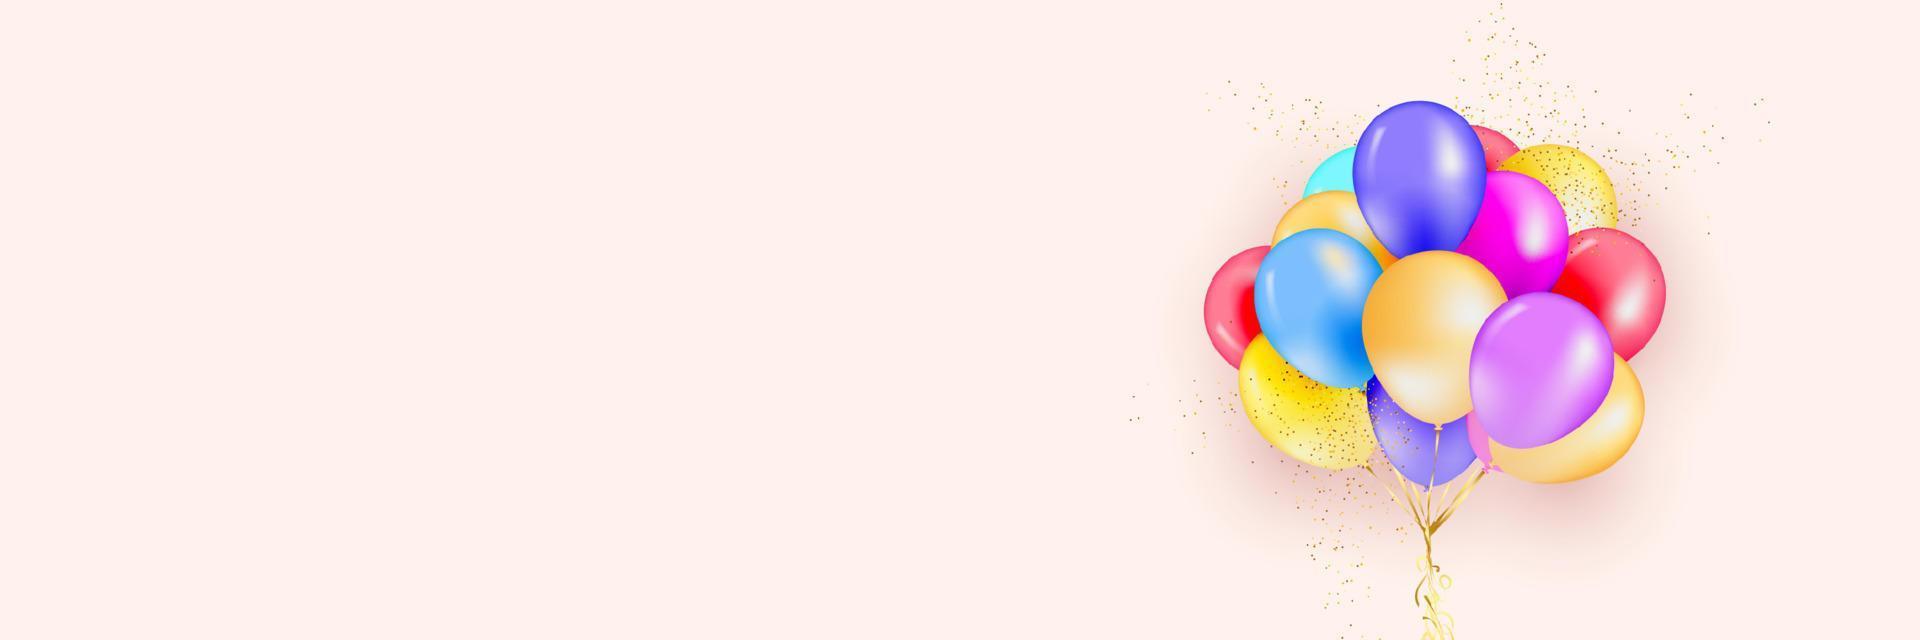 fundo festivo com balões de hélio. comemorar um aniversário, pôster, feliz aniversário de banner. elementos de design decorativo realista. balão de objeto 3d vetorial com fita, cor rosa e branca vetor